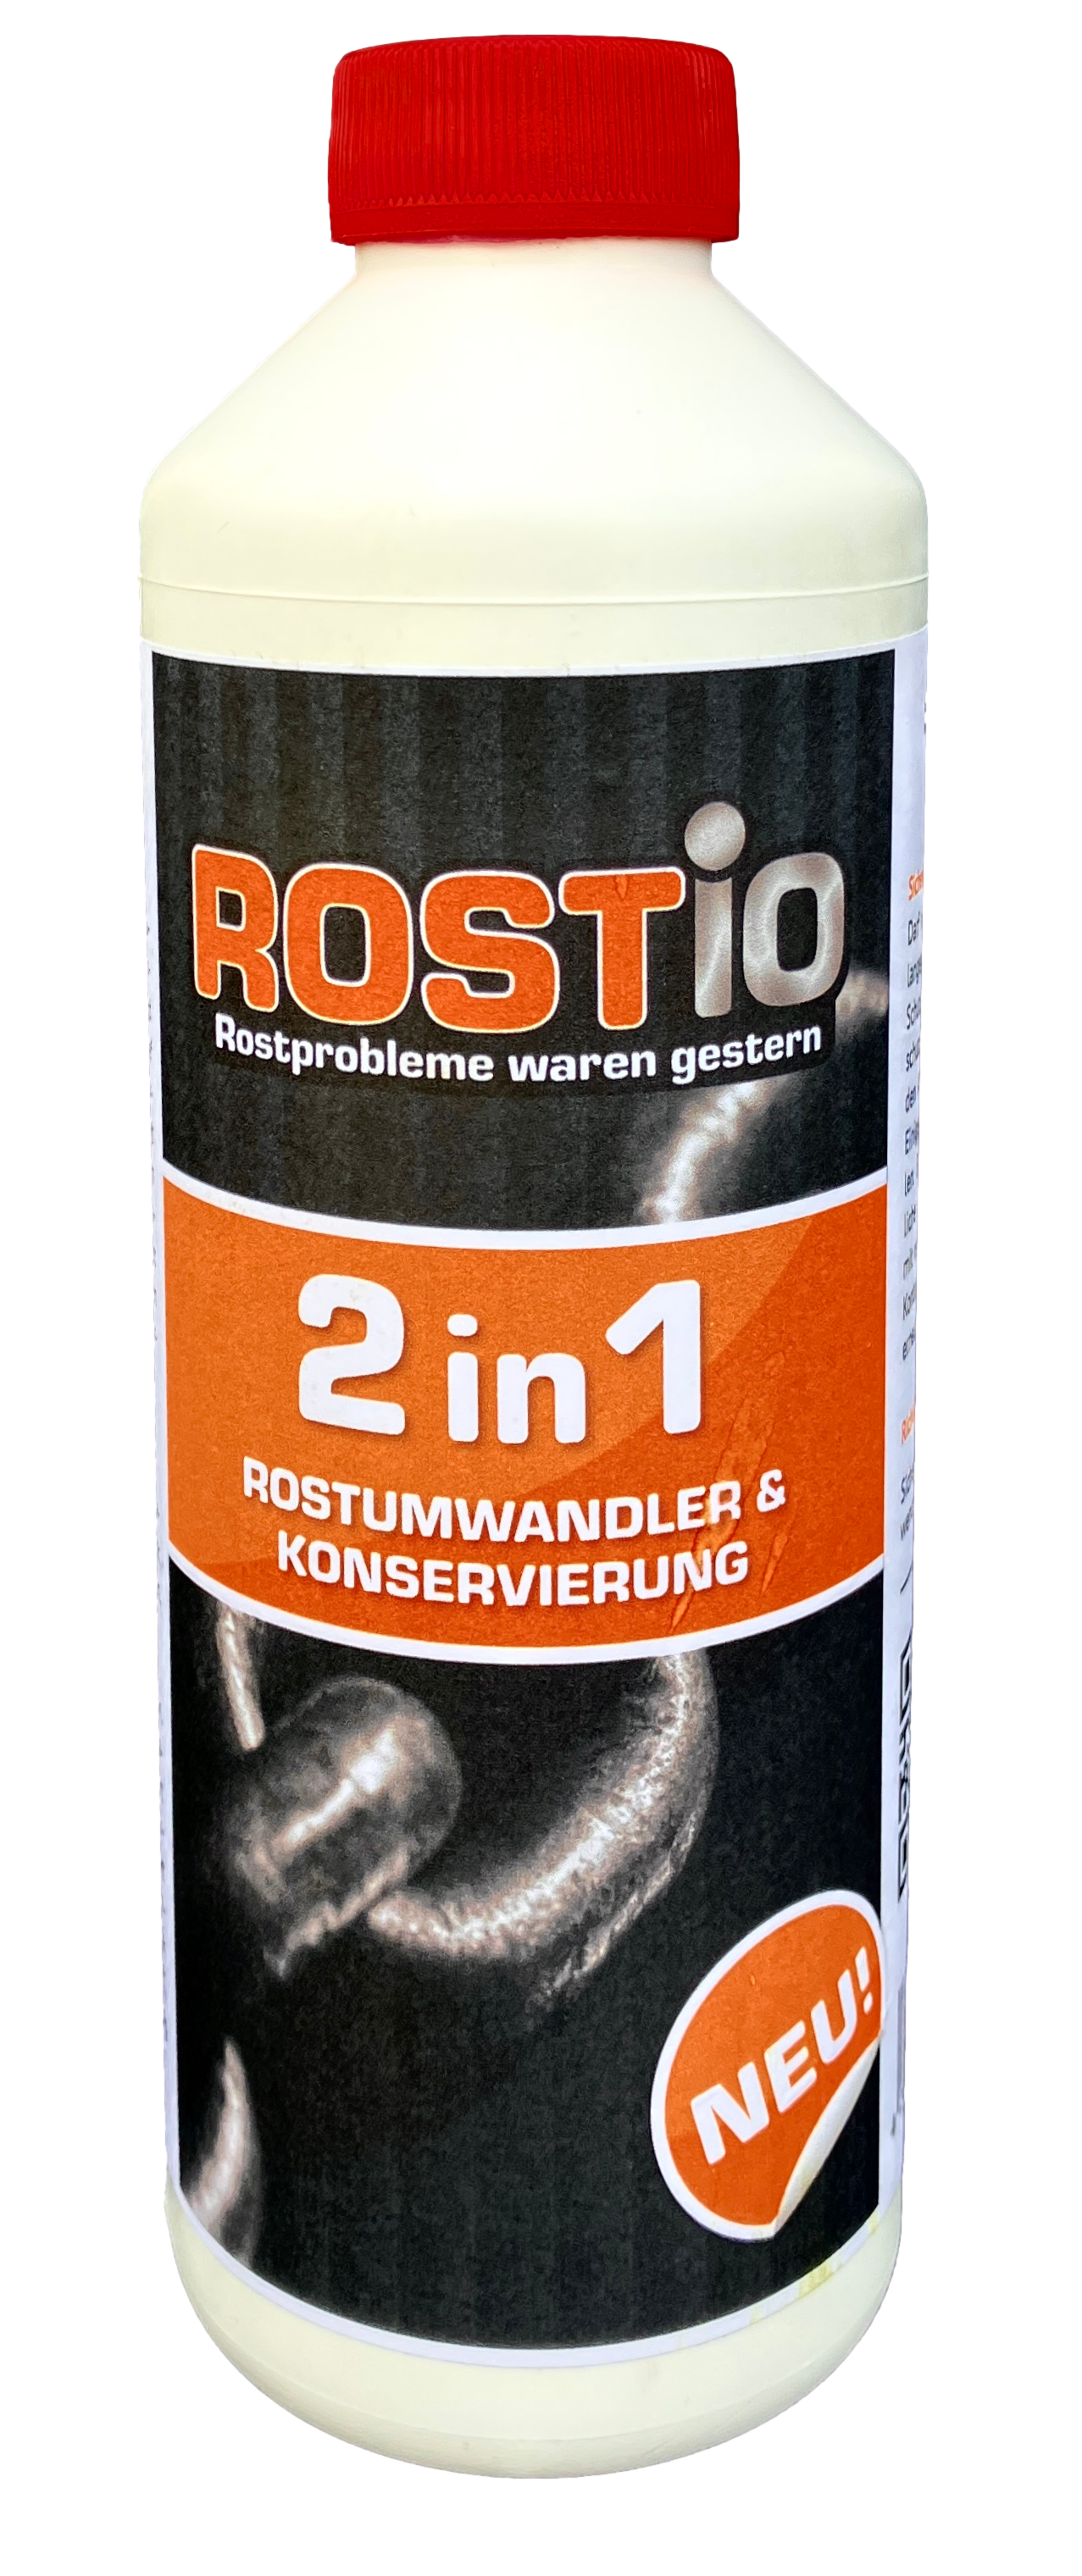 ROSTIO 2 in 1 Rostumwandler & Konservierung Hohlraum-Wachs  ROSTIO  Rostumwandler & Rostentferner - Rost entfernen leicht gemacht